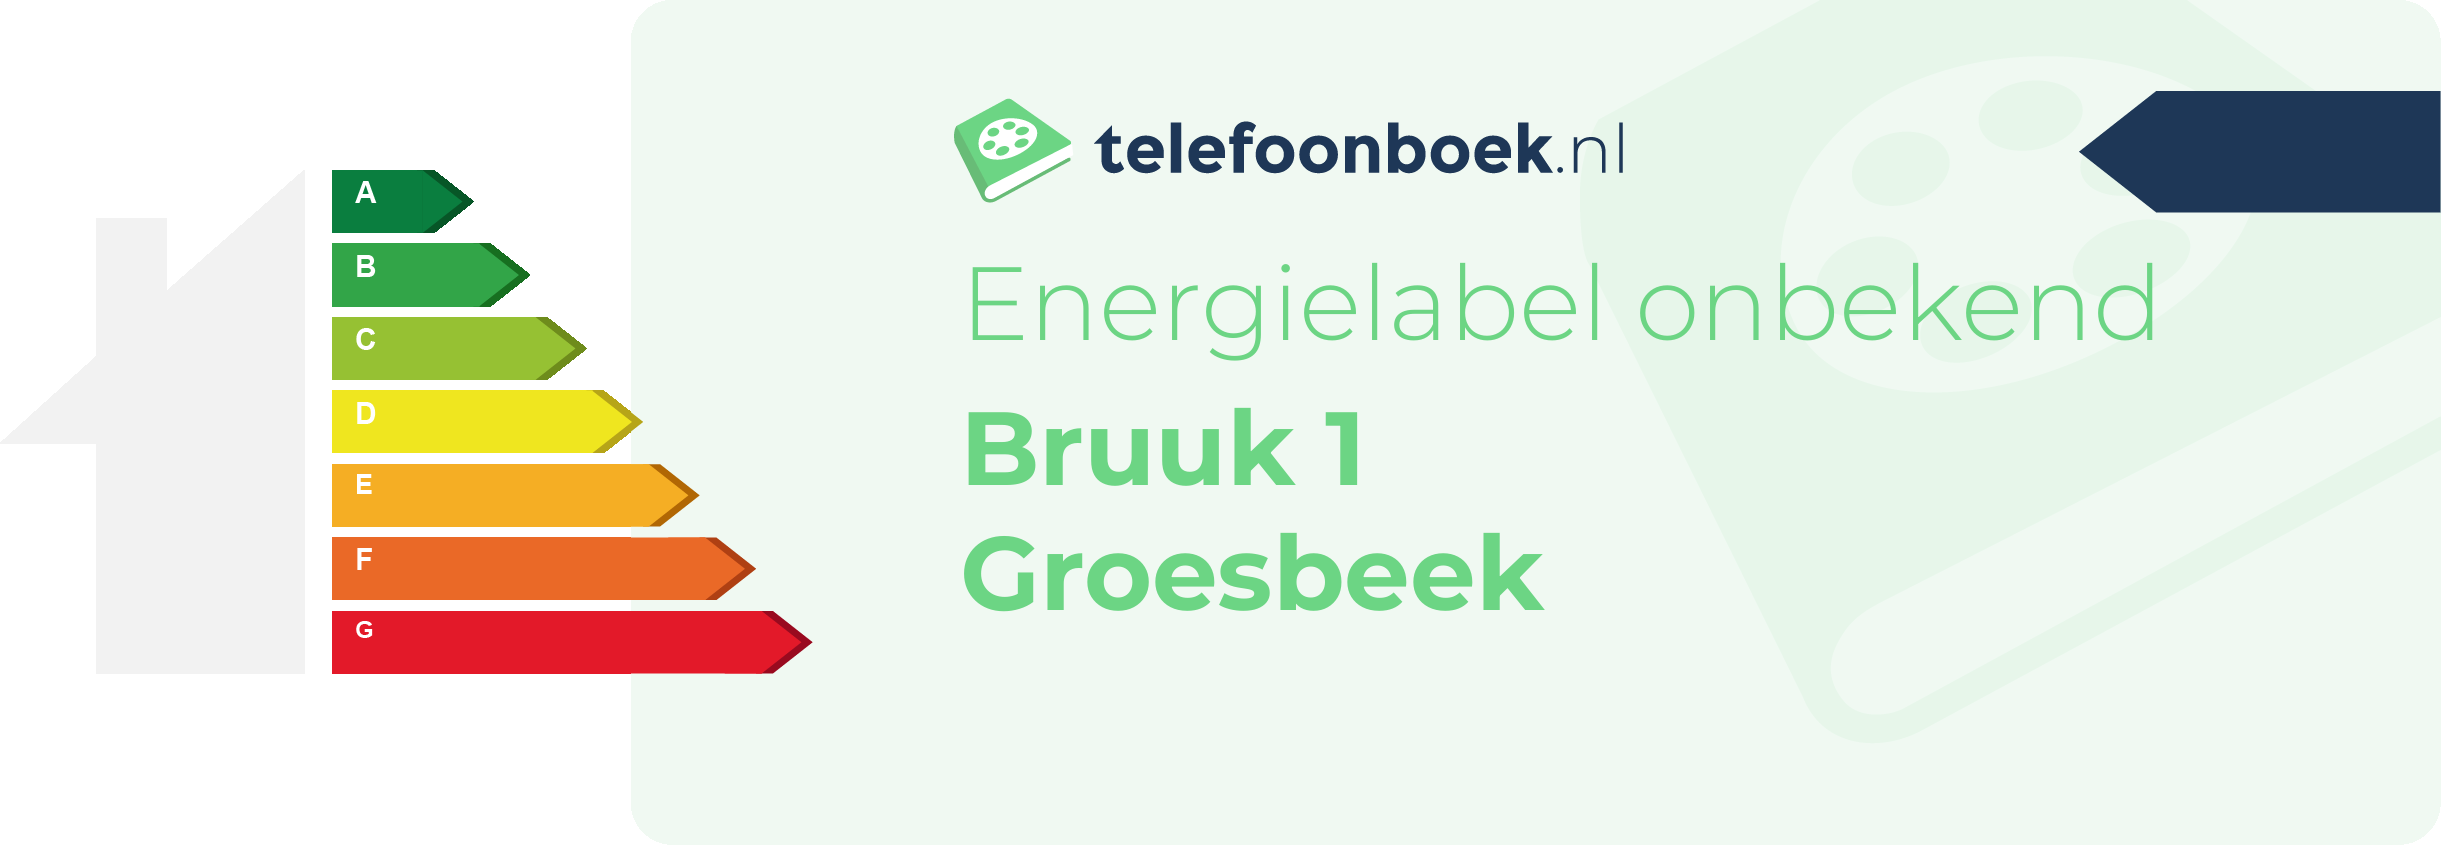 Energielabel Bruuk 1 Groesbeek